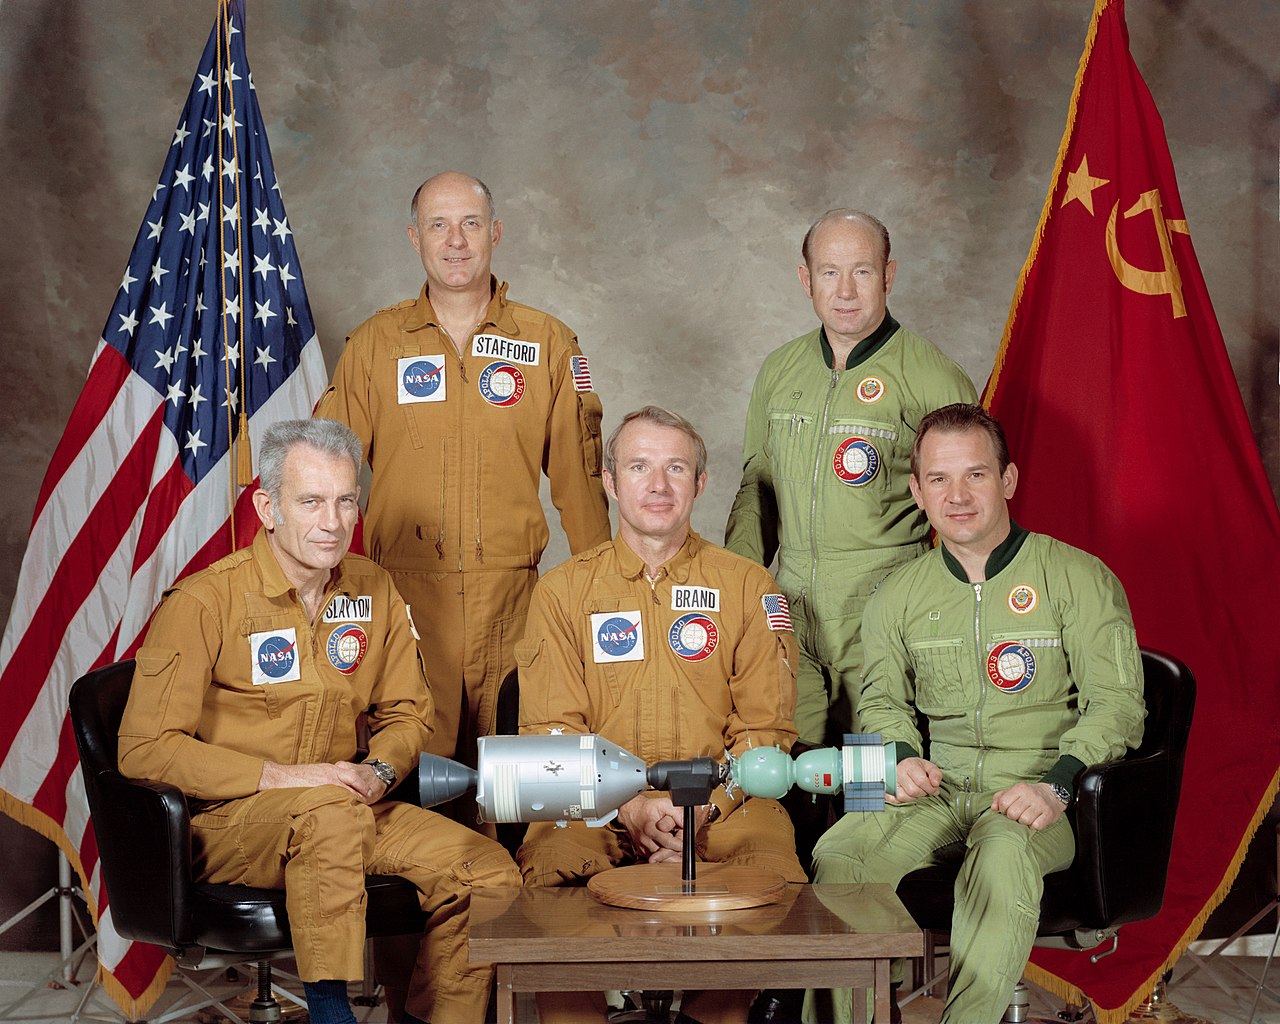 Apollo-Soyuz 1975 crew